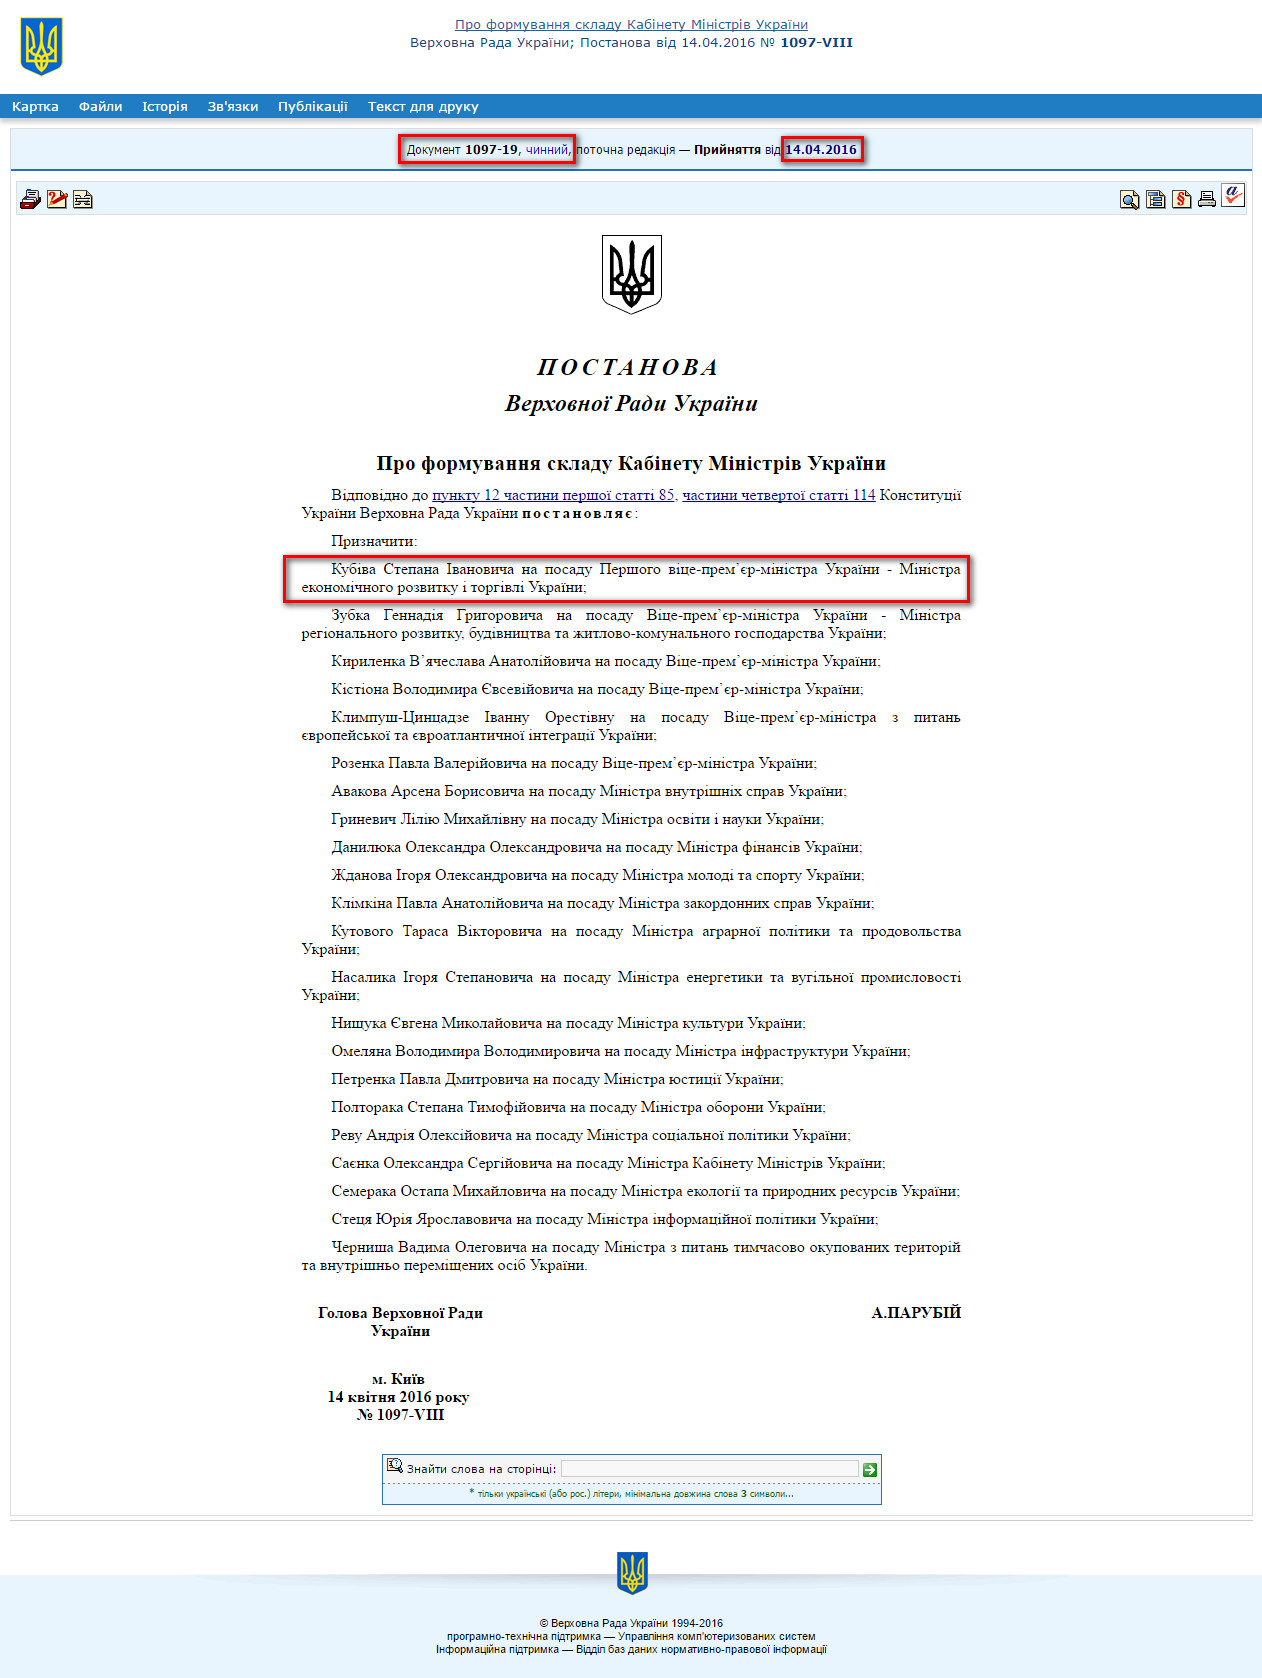 http://zakon3.rada.gov.ua/laws/show/1097-19